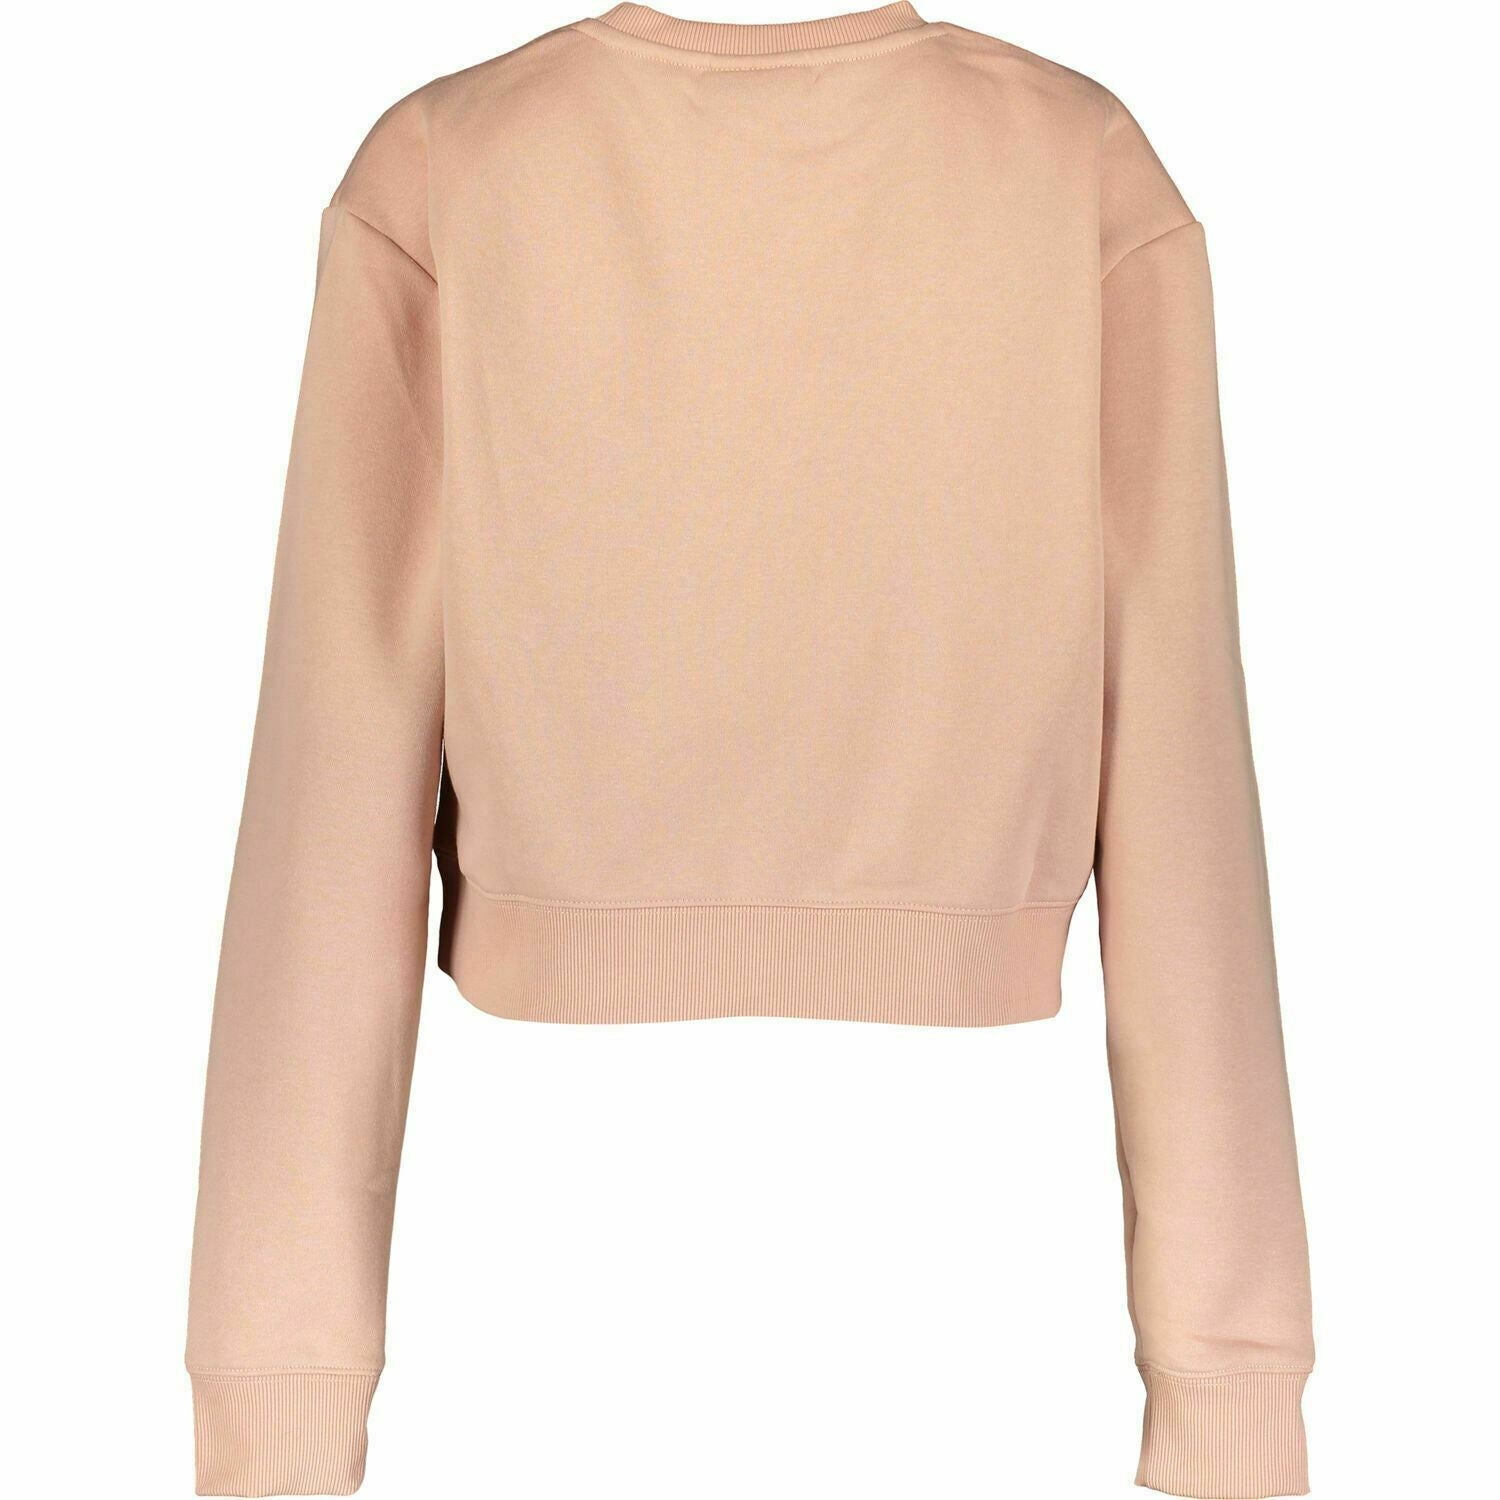 FILA Women's DOLLY Cropped Sweatshirt Top, Misty Rose, size XS